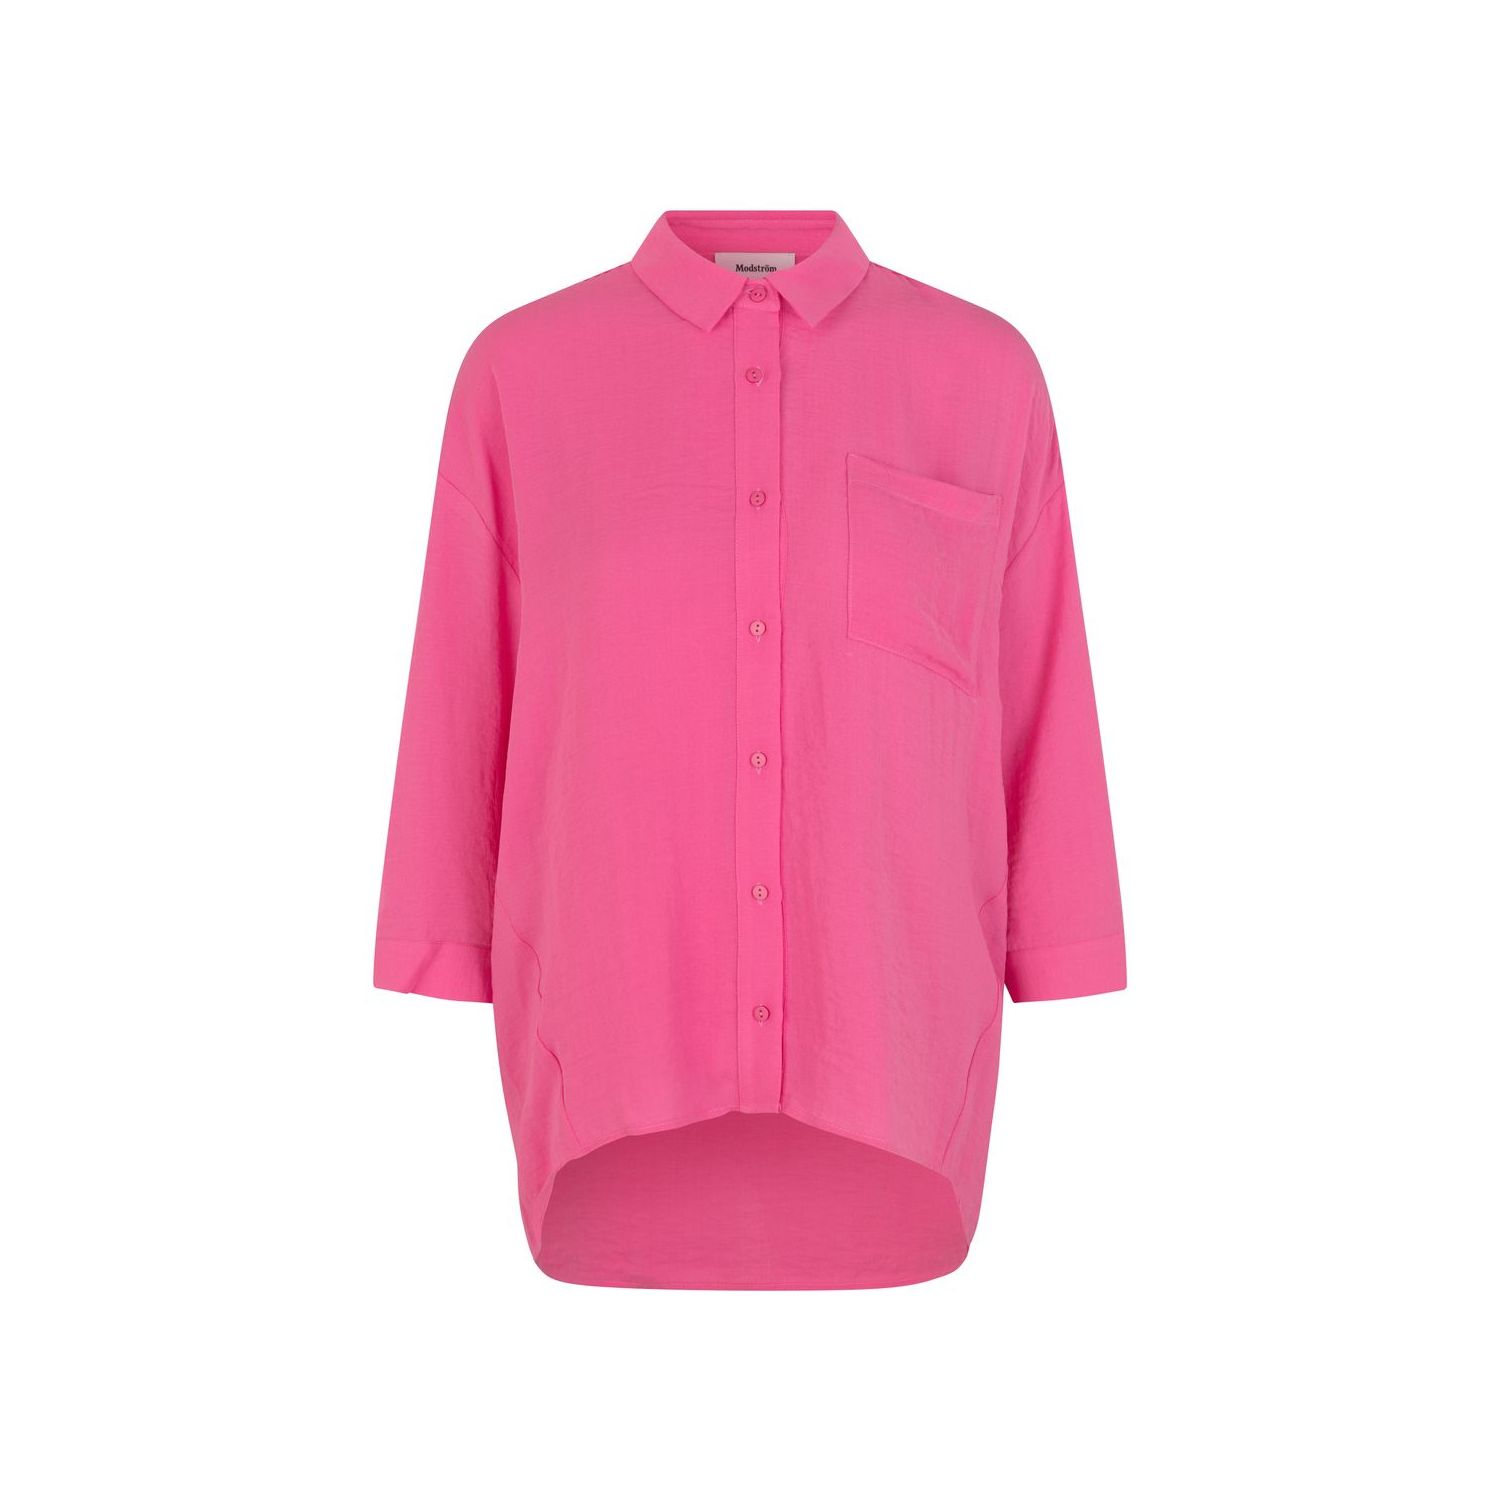 Modström alexis shirt taffy pink